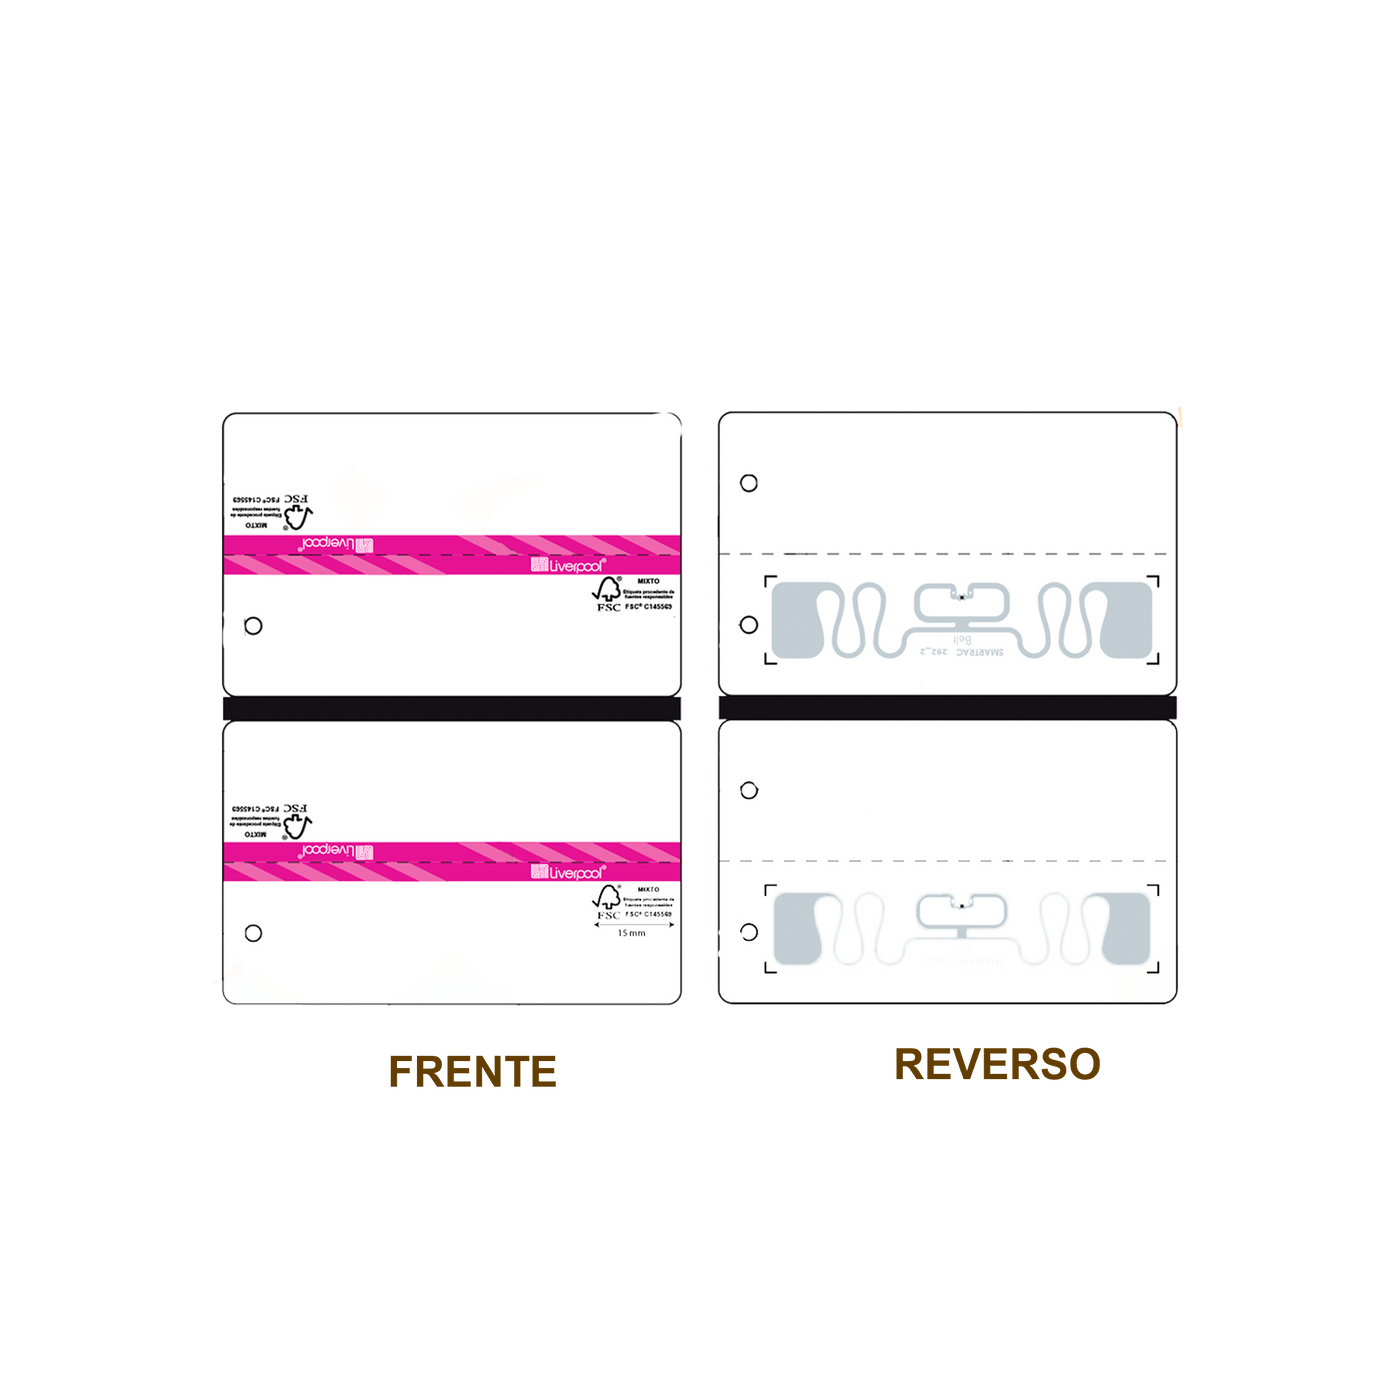 20 Millares de Etiqueta RFID Cartulina Adherible blanca con impresión rosa, 84mm x 52 mm con inlay, Belt M730 de Avery Dennison, Clase 1 Gen 2, UHF 860-960 Mhz, EPC 128 Bit